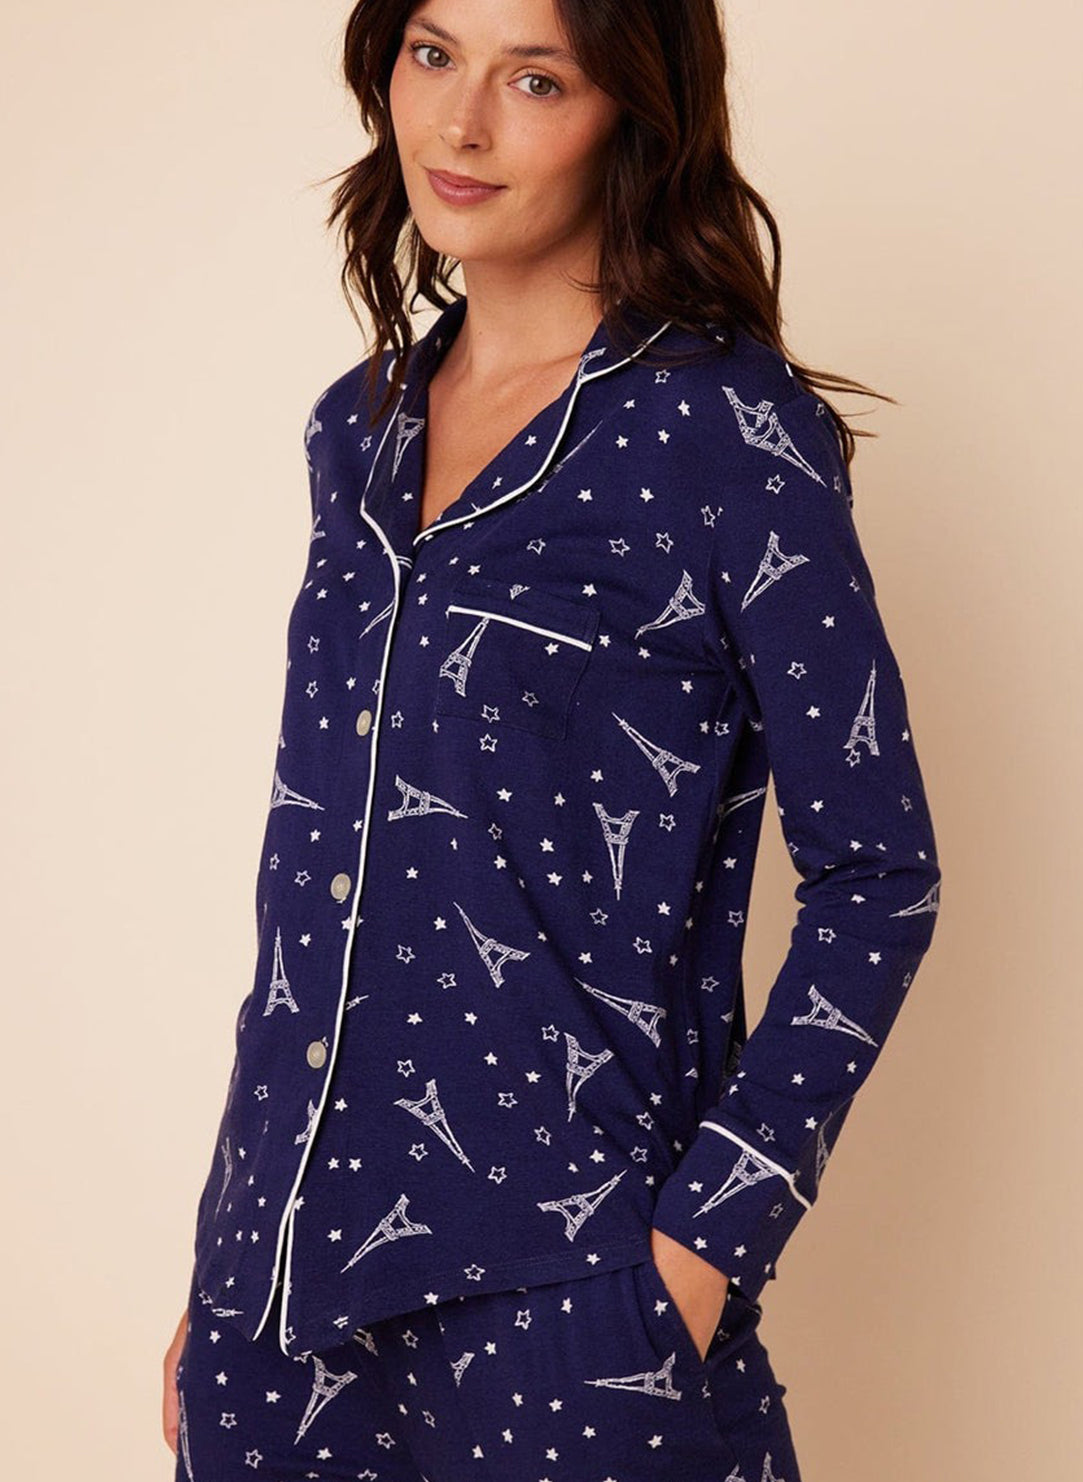 Etoile Long Sleeve Pajama Set